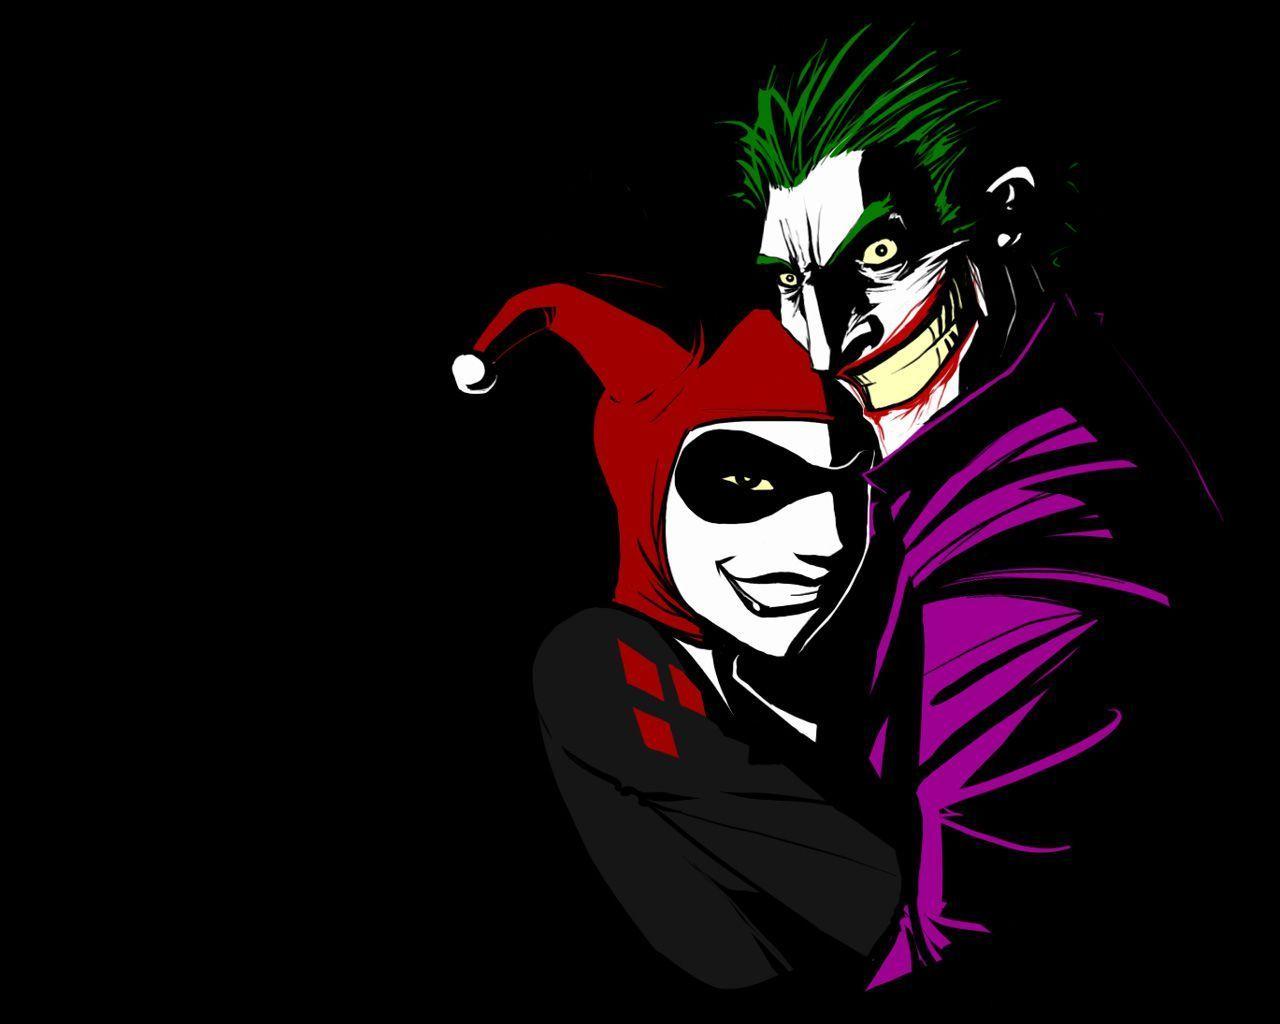 35 Gambar Wallpaper Joker Cartoon Hd terbaru 2020